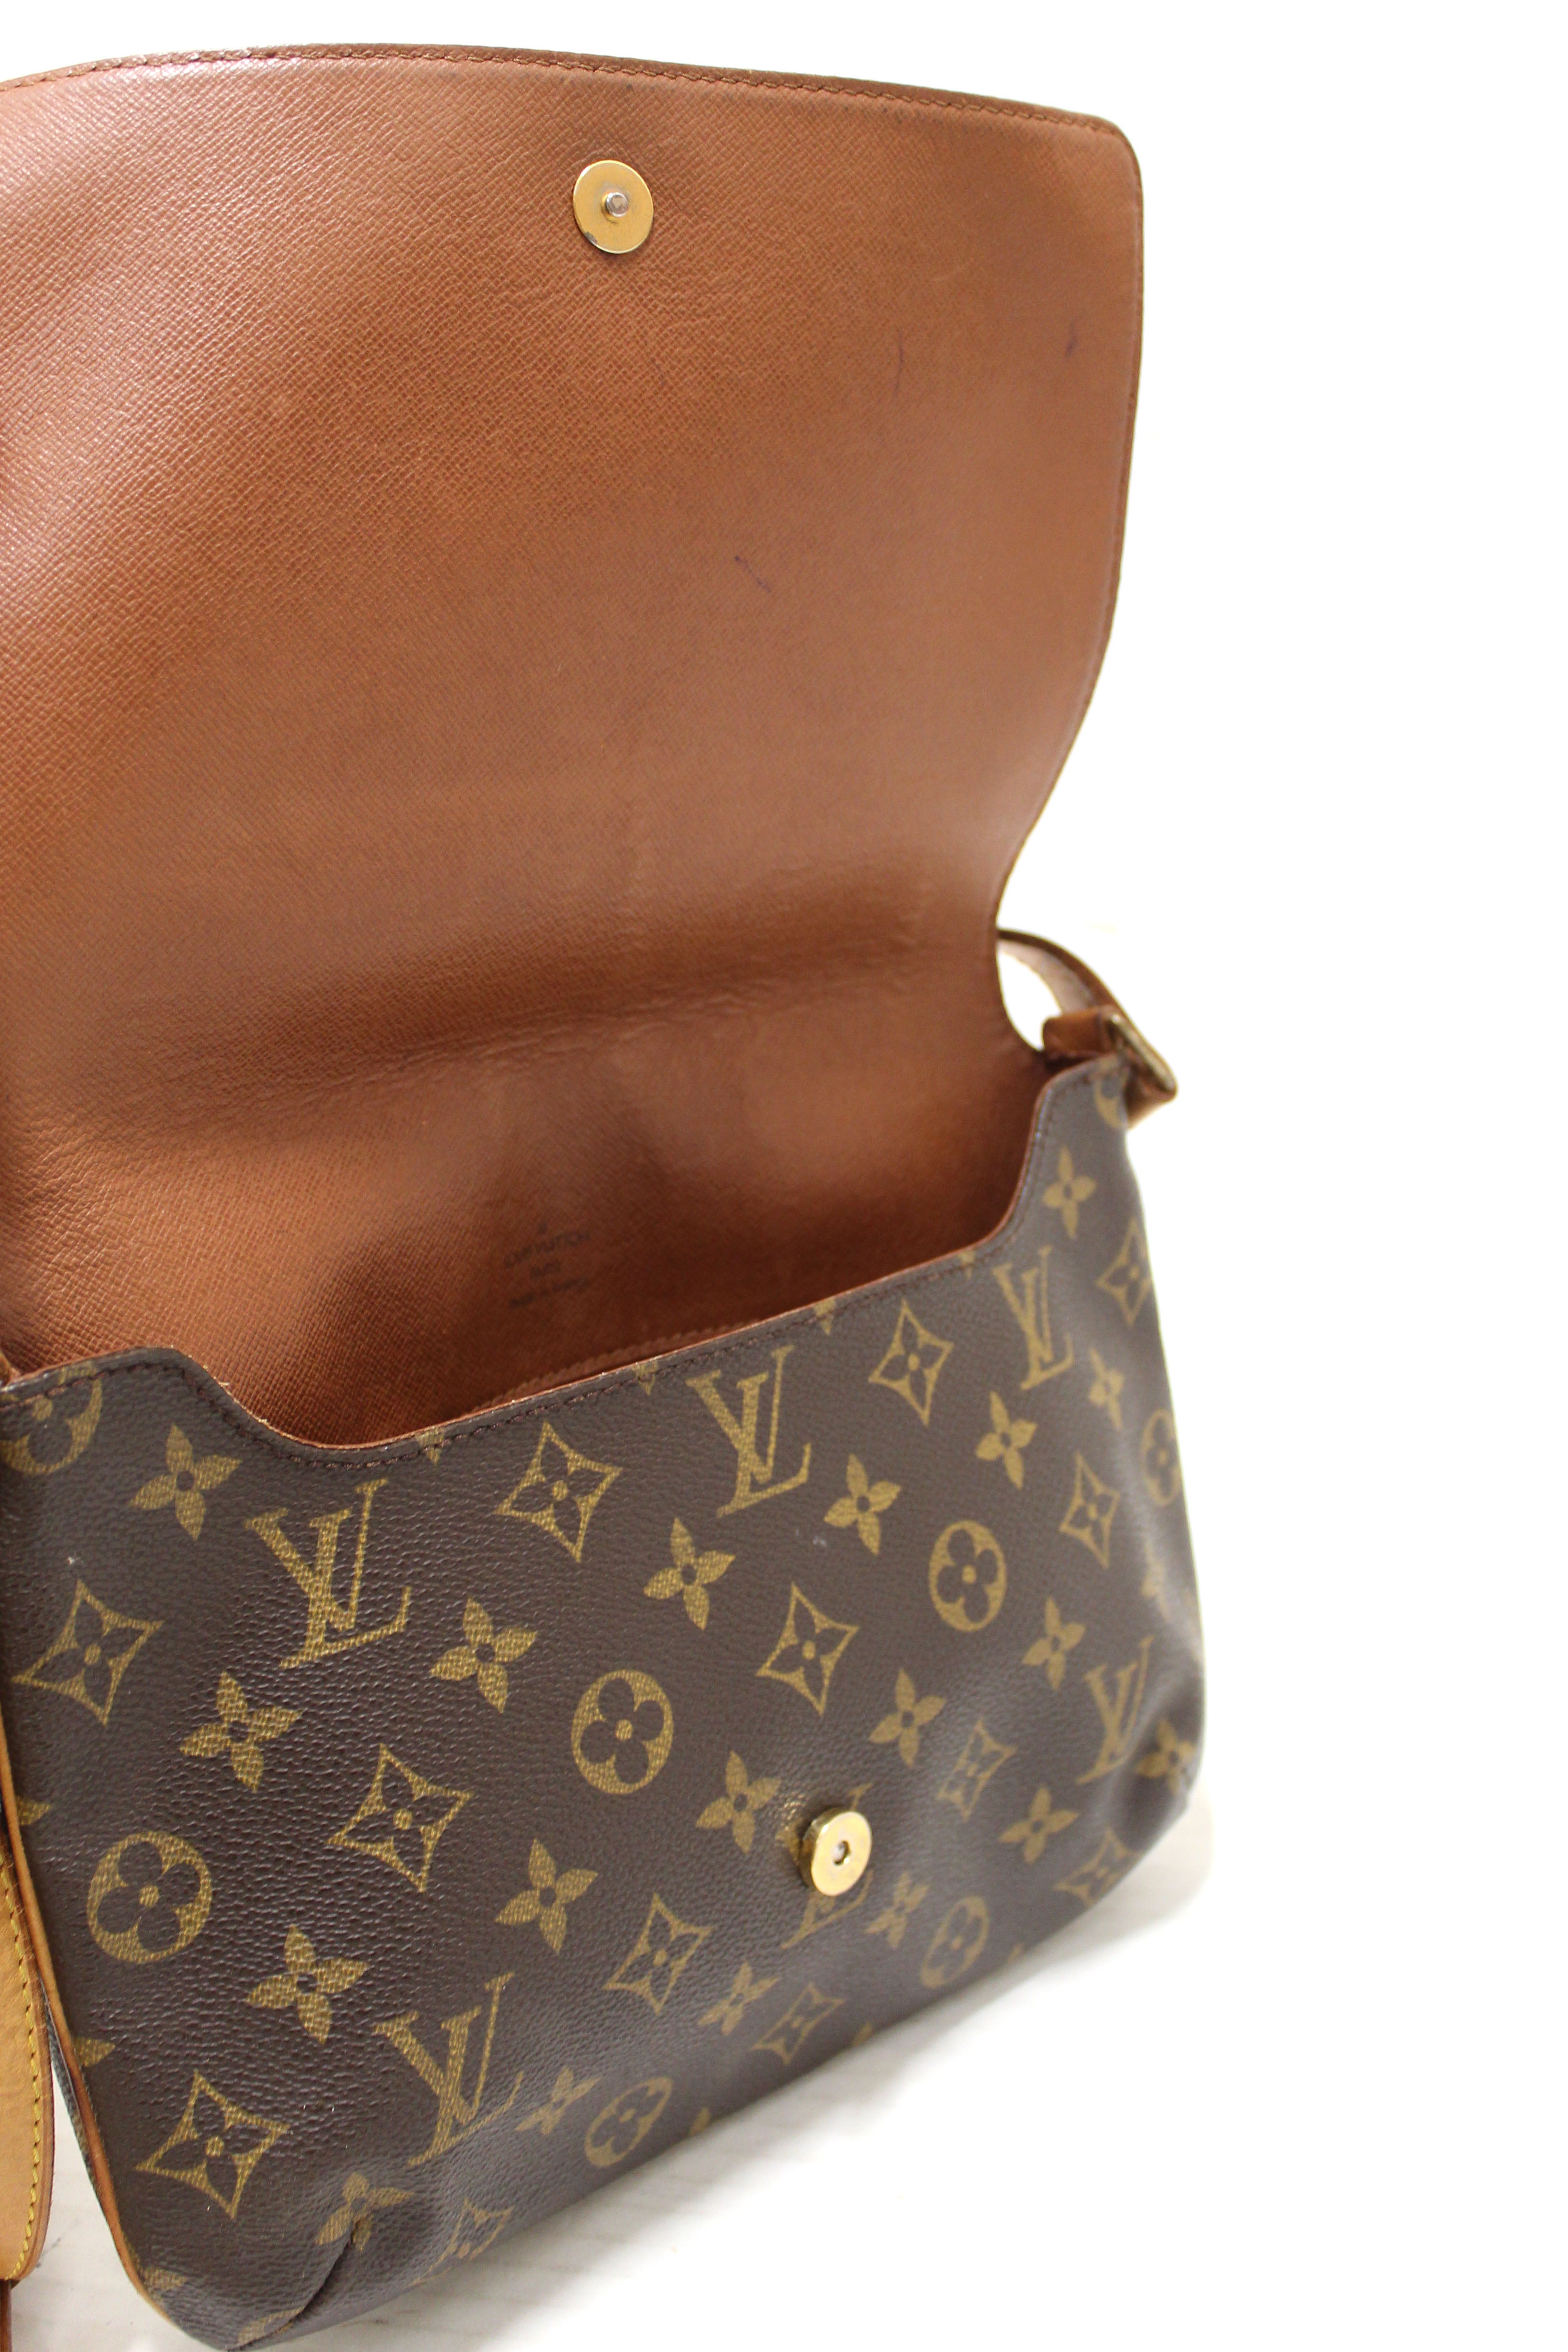 Authentic Louis Vuitton Classic Monogram Musette Tango Shoulder Bag